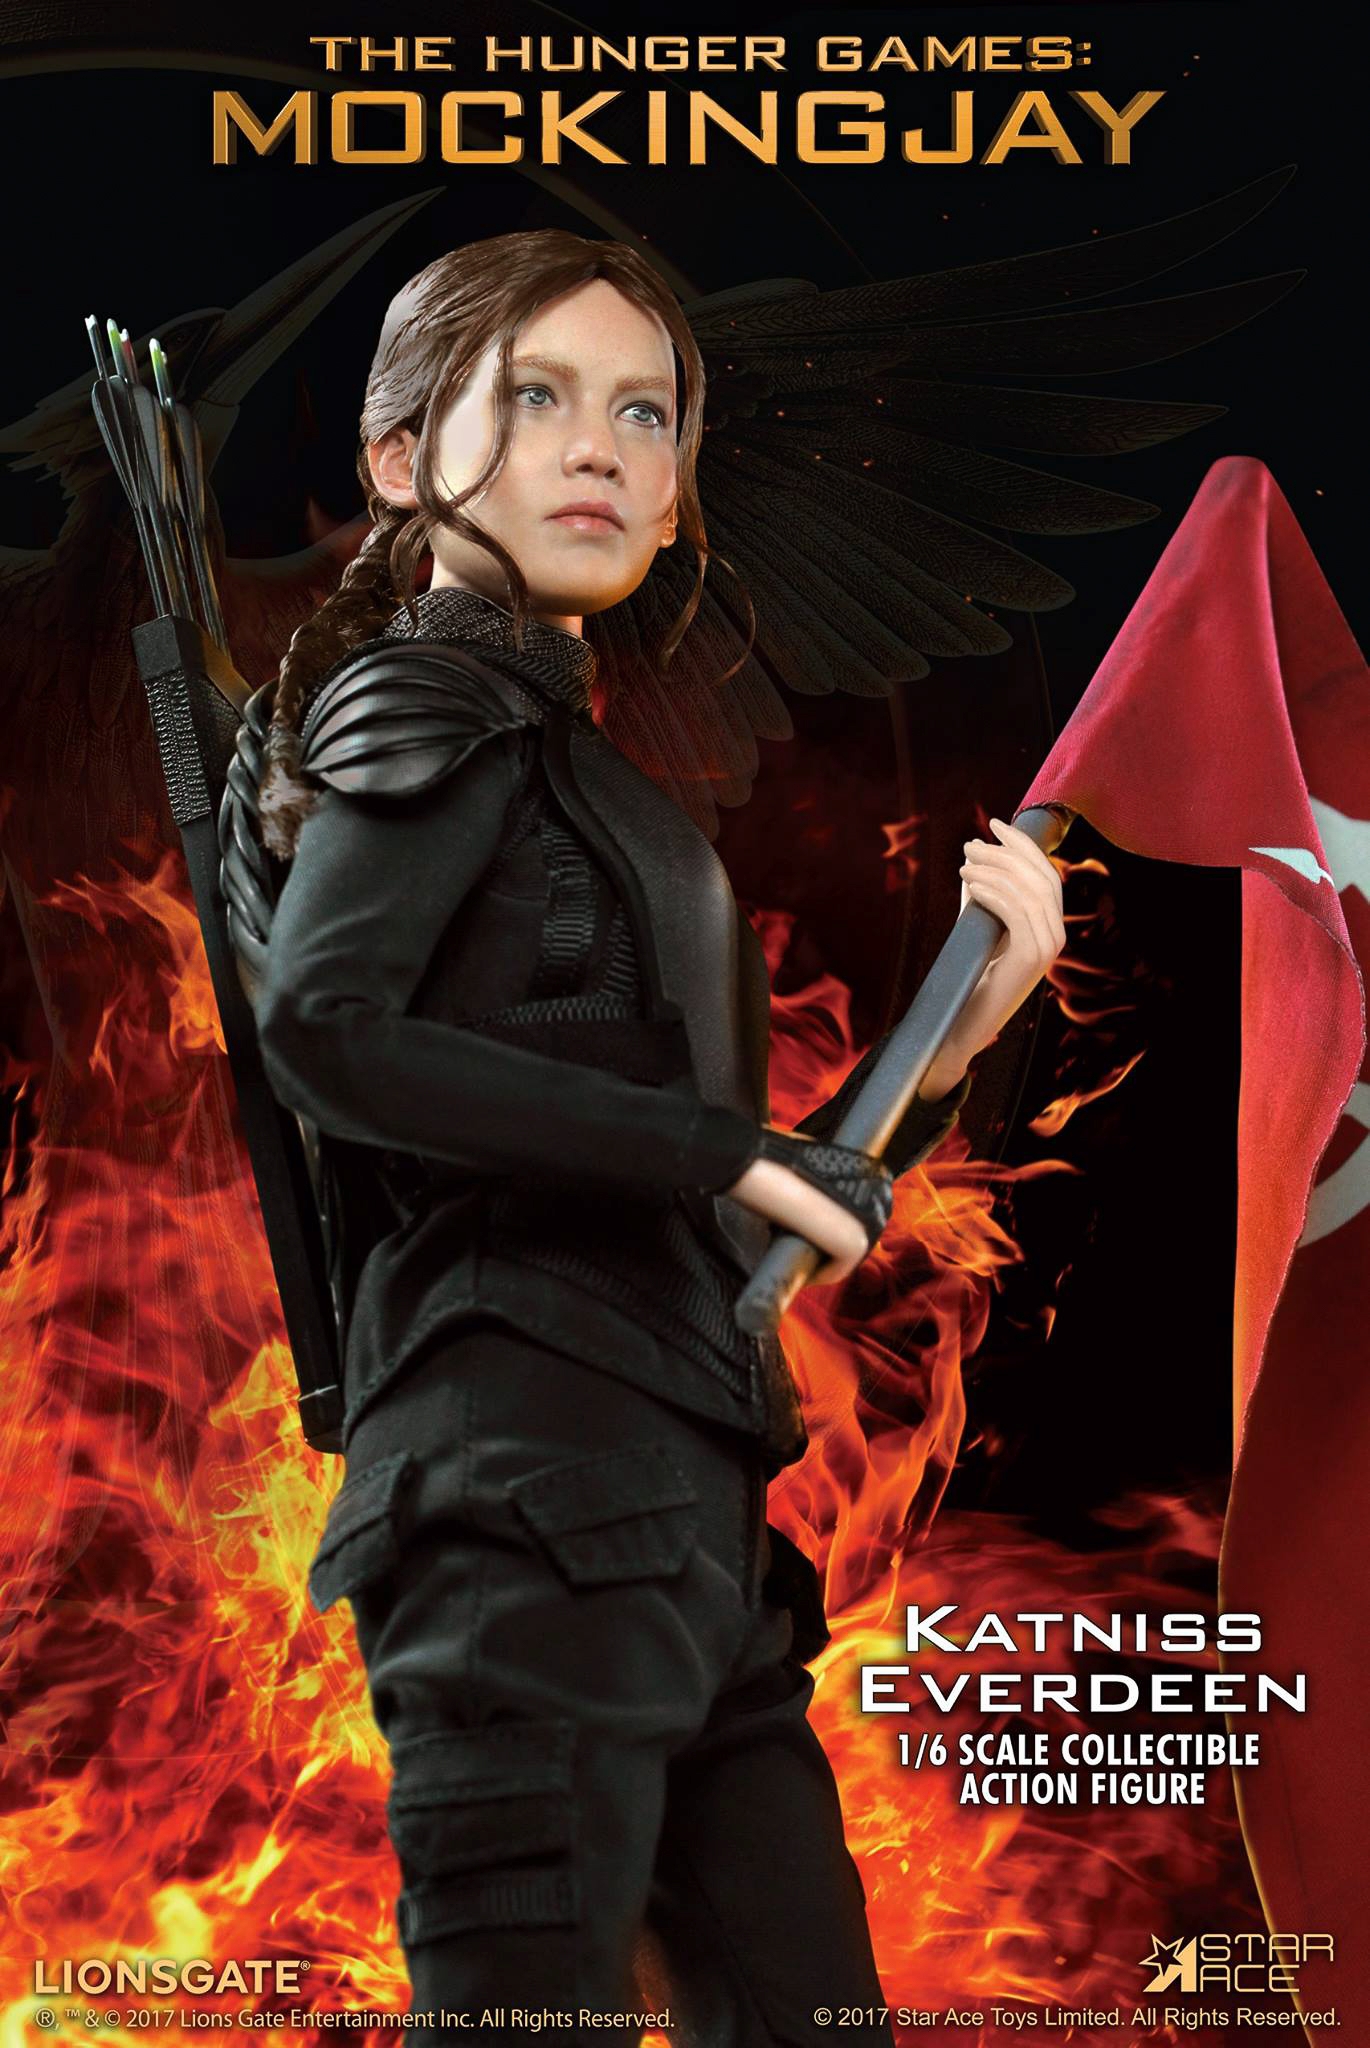 Star-Ace-Toys-Ltd-Katniss-Everdeen-Mockingjay-011.jpg